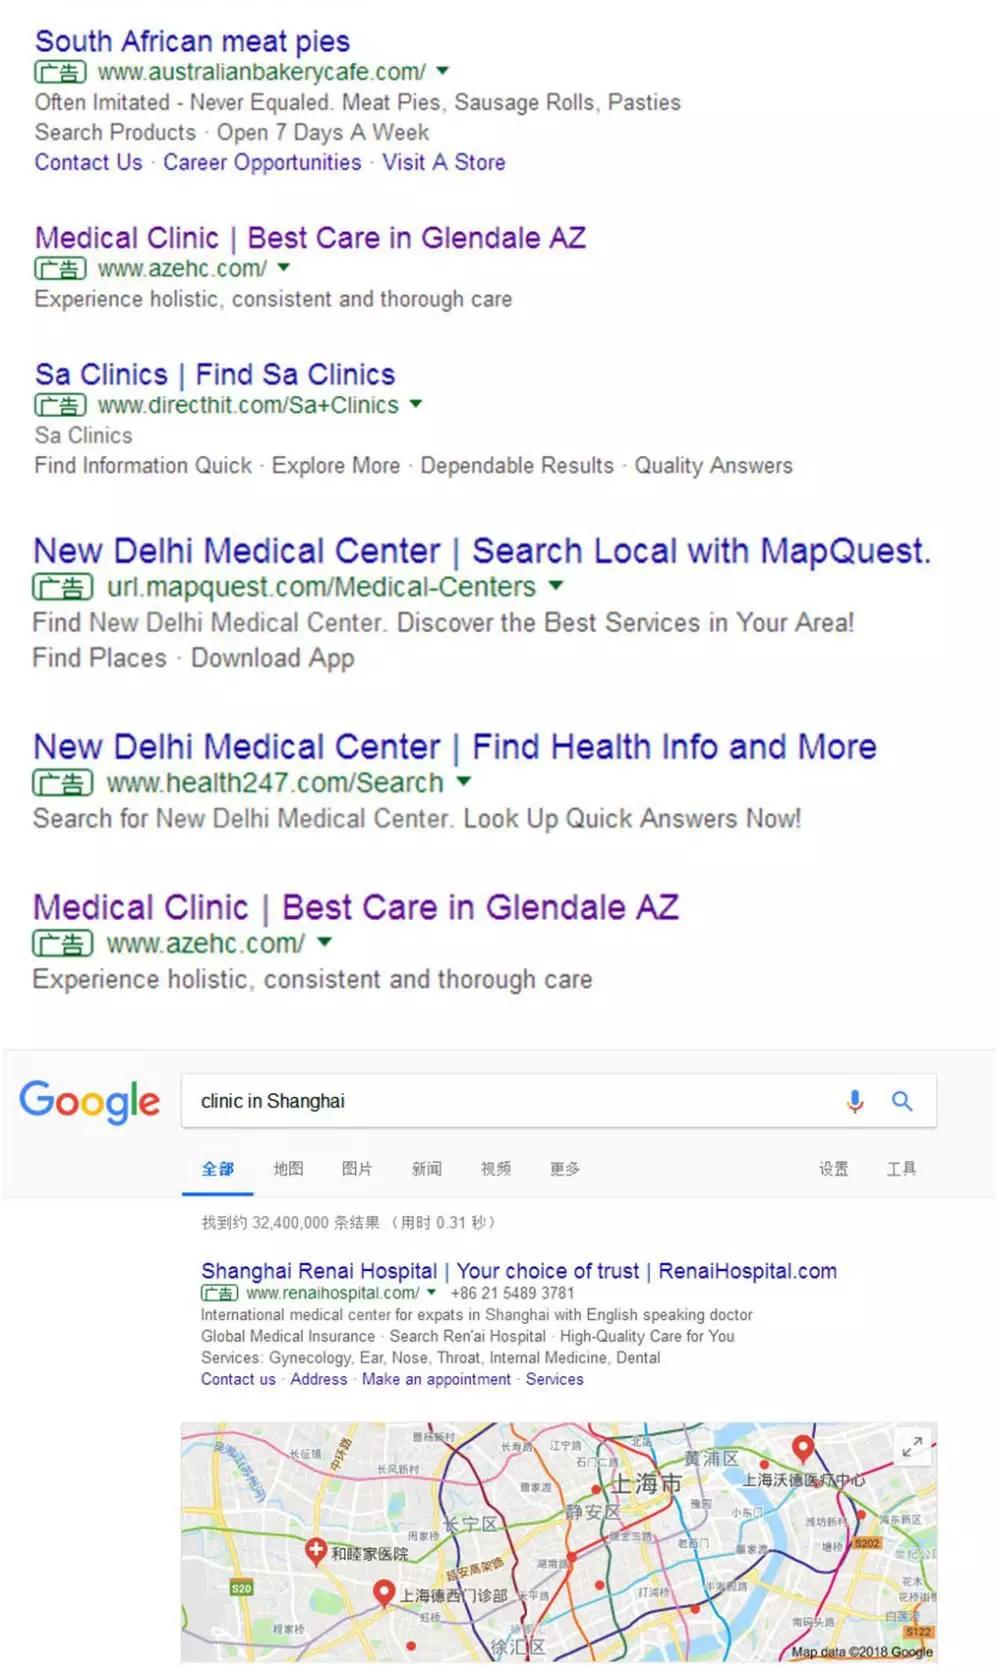 如果按照中国标准，谷歌的医疗广告是否合规？